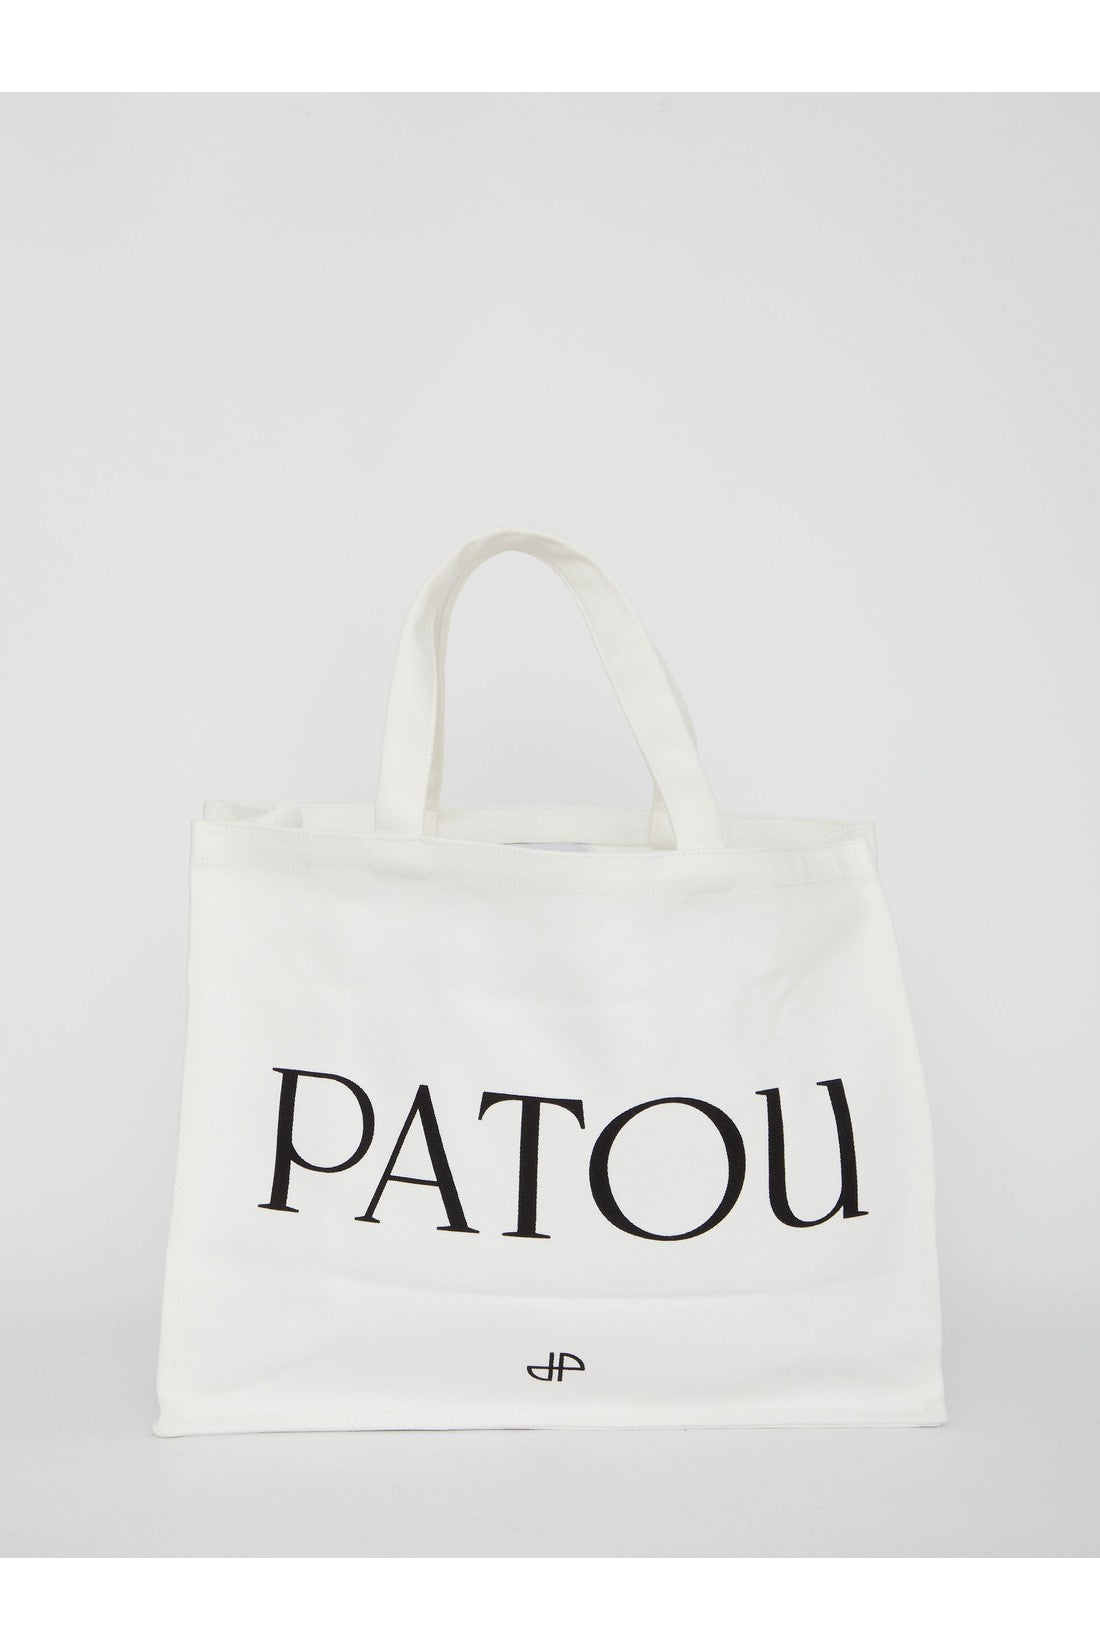 Patou Large Tote bag